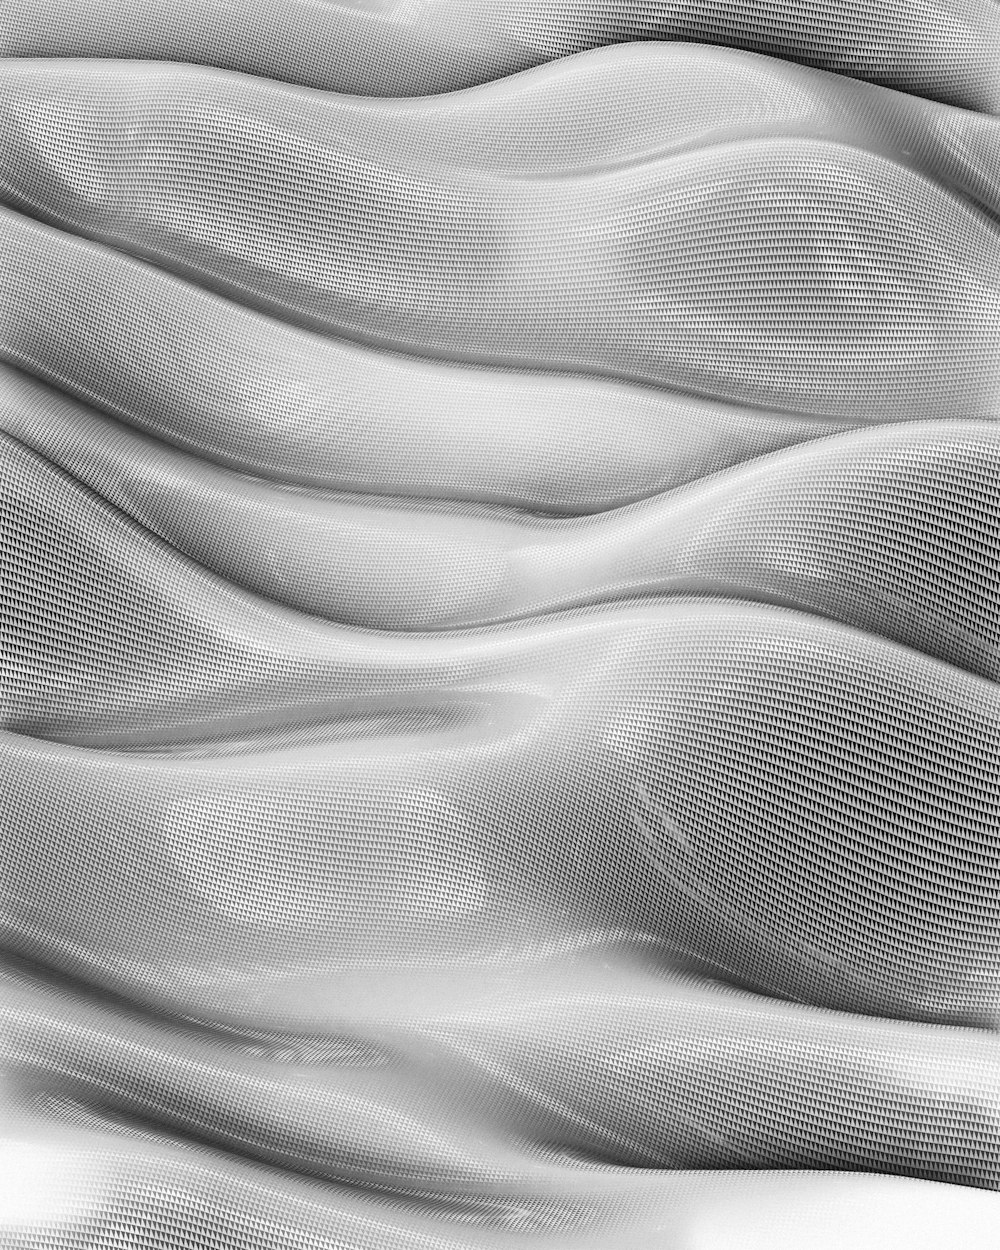 uma foto em preto e branco de uma superfície ondulada